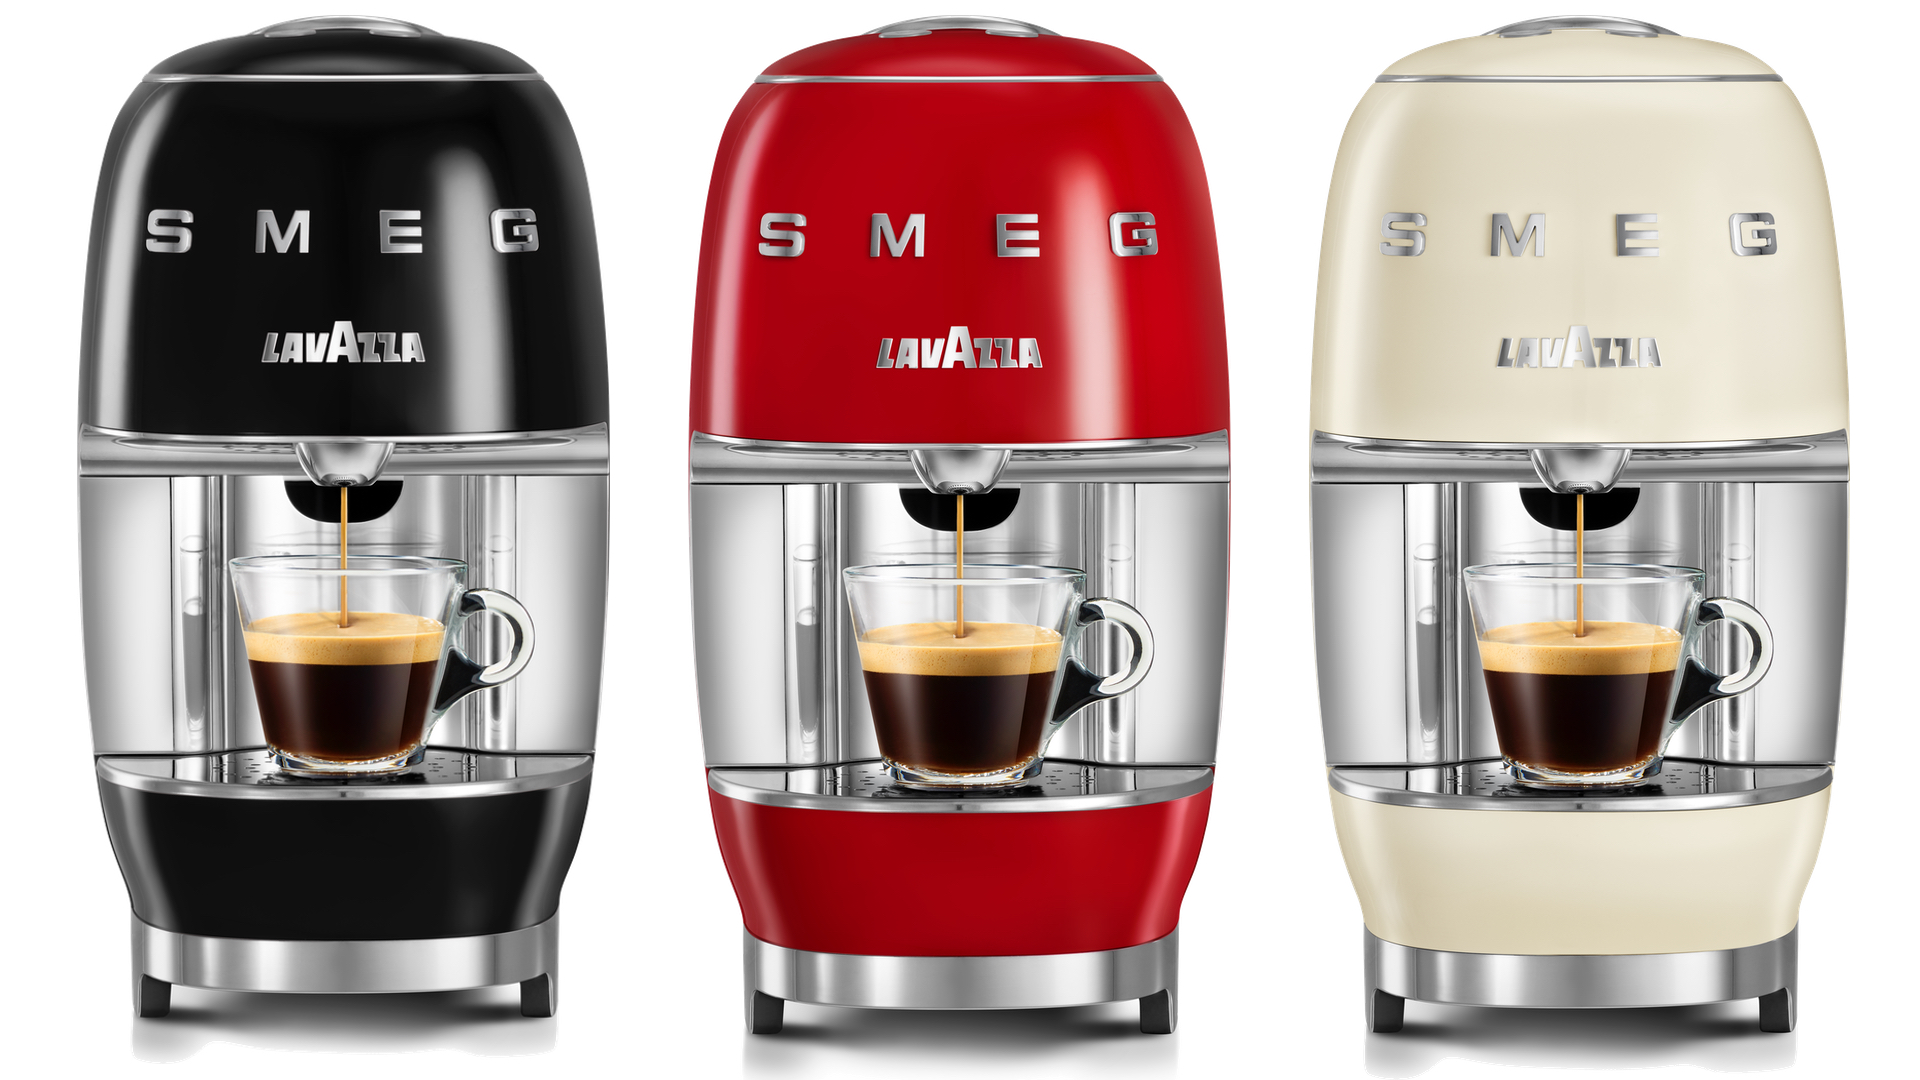 Smeg Red Drip Coffee Maker + Reviews